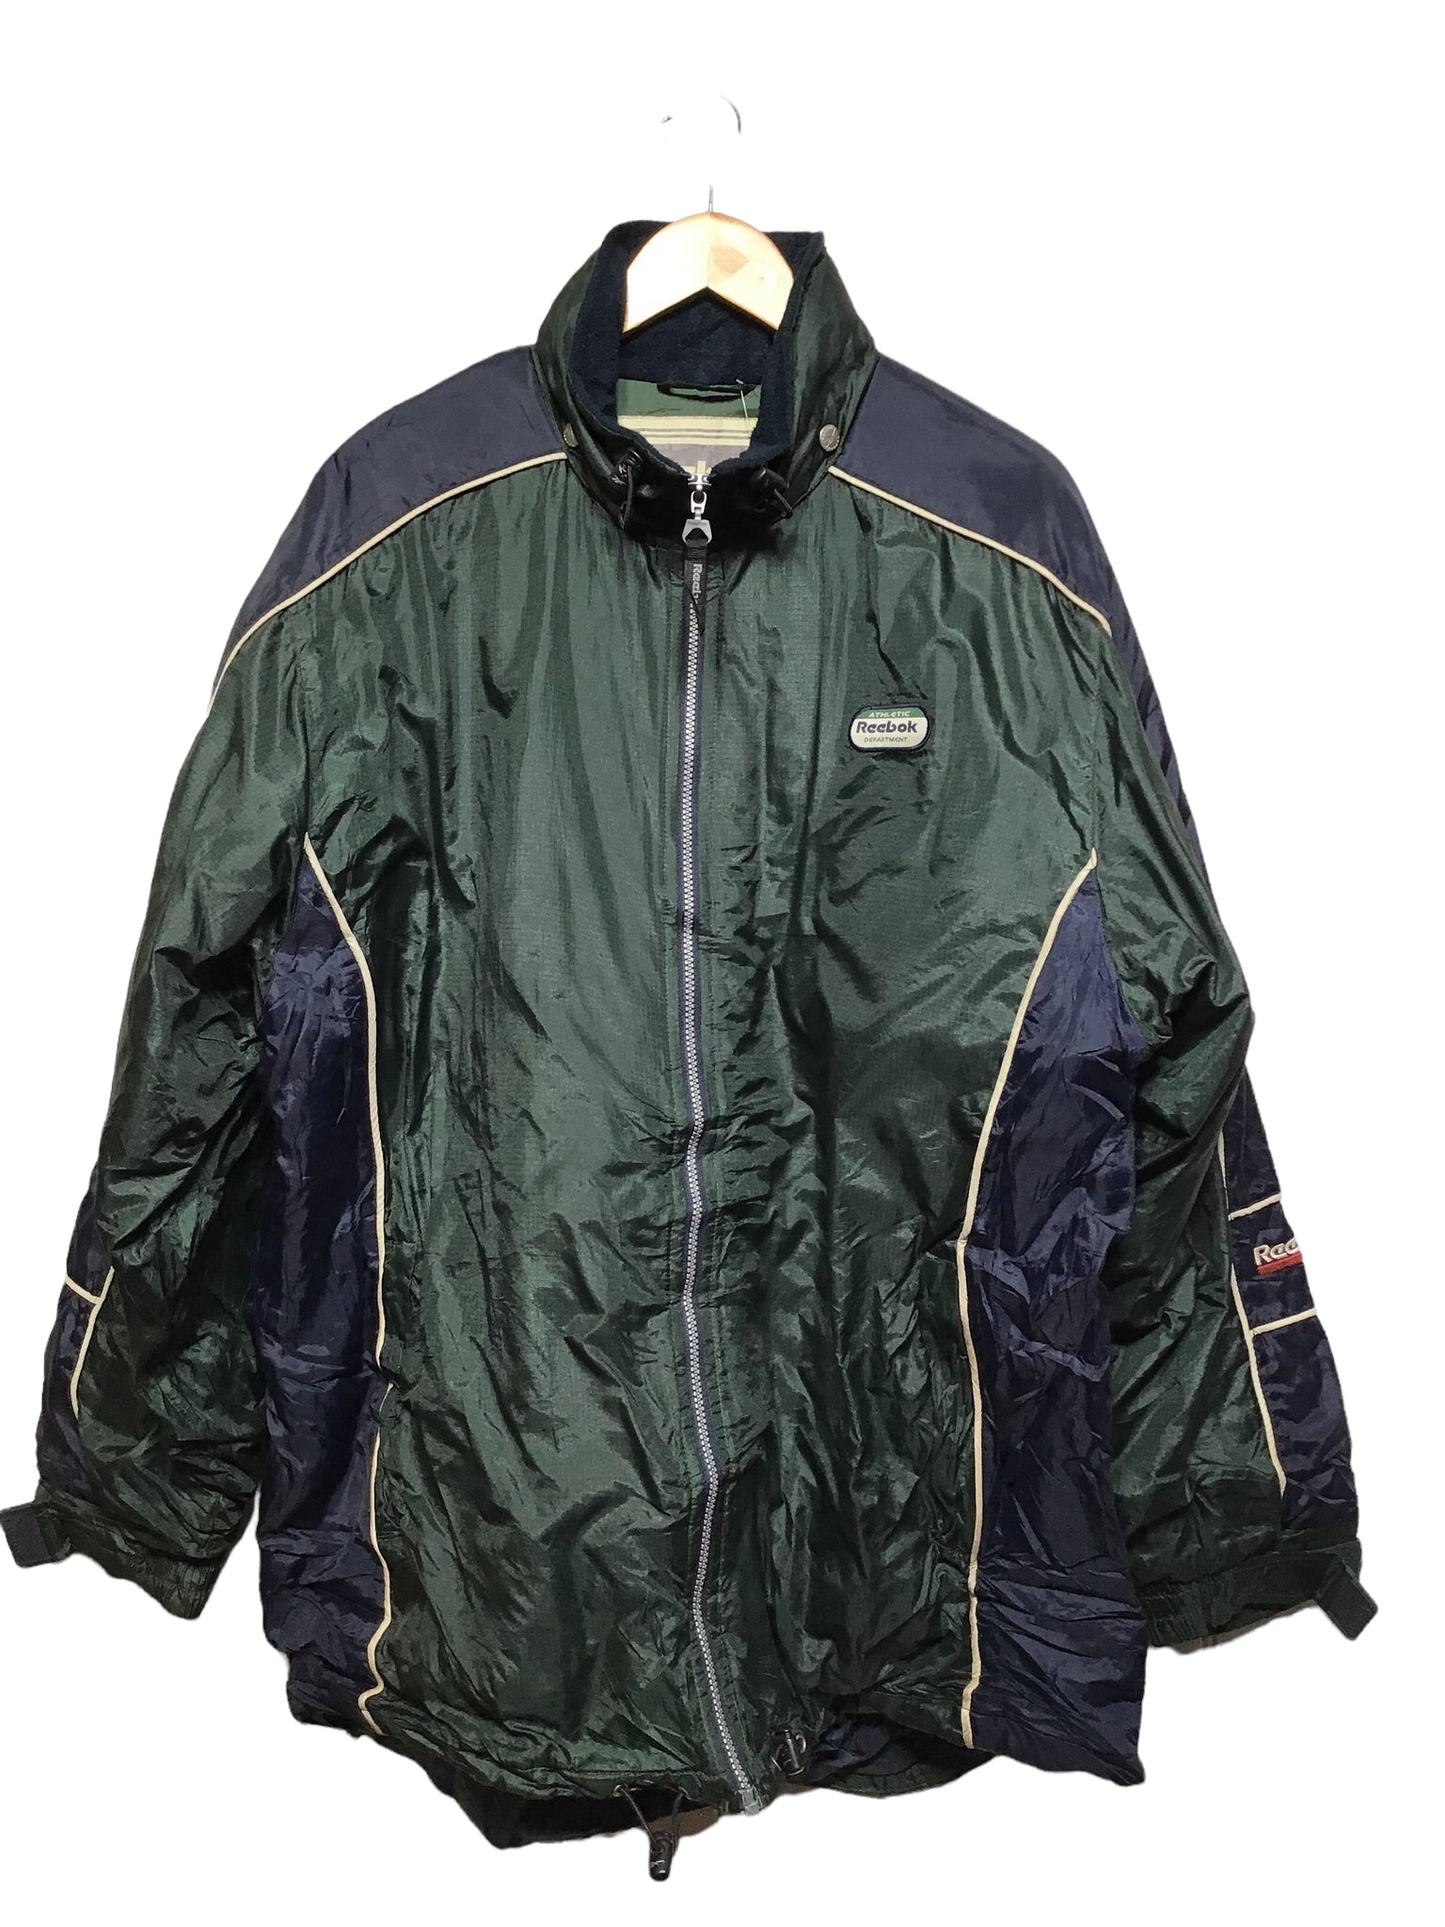 Reebok Sports Jacket (Size XL)